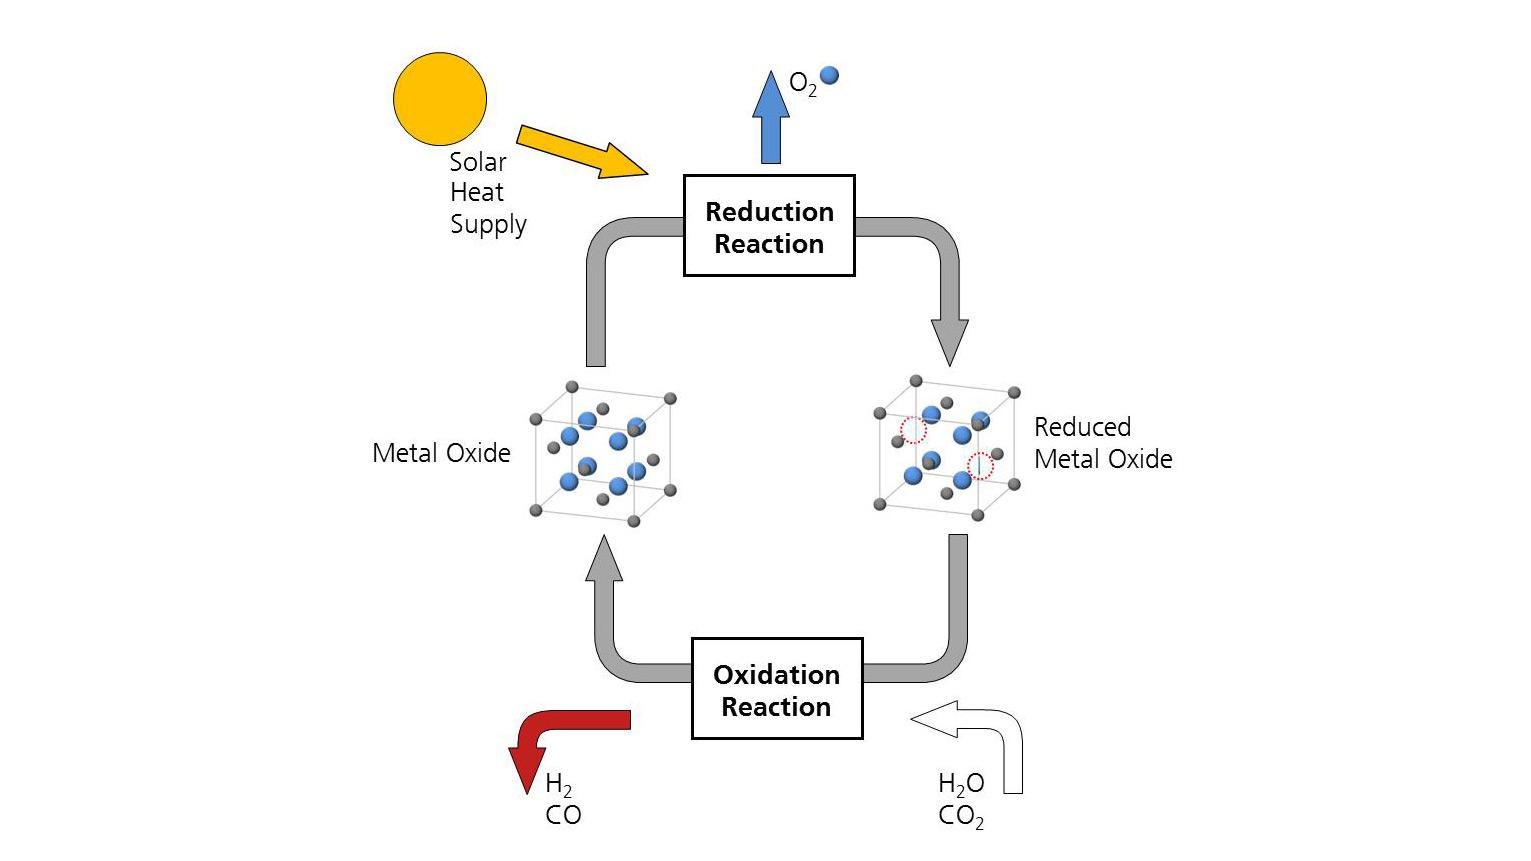 Schema des zweistufigen thermochemischen Kreisprozesses zur Spaltung von H2O und CO2 mit Hilfe der Redoxreaktionen eines Metalloxids